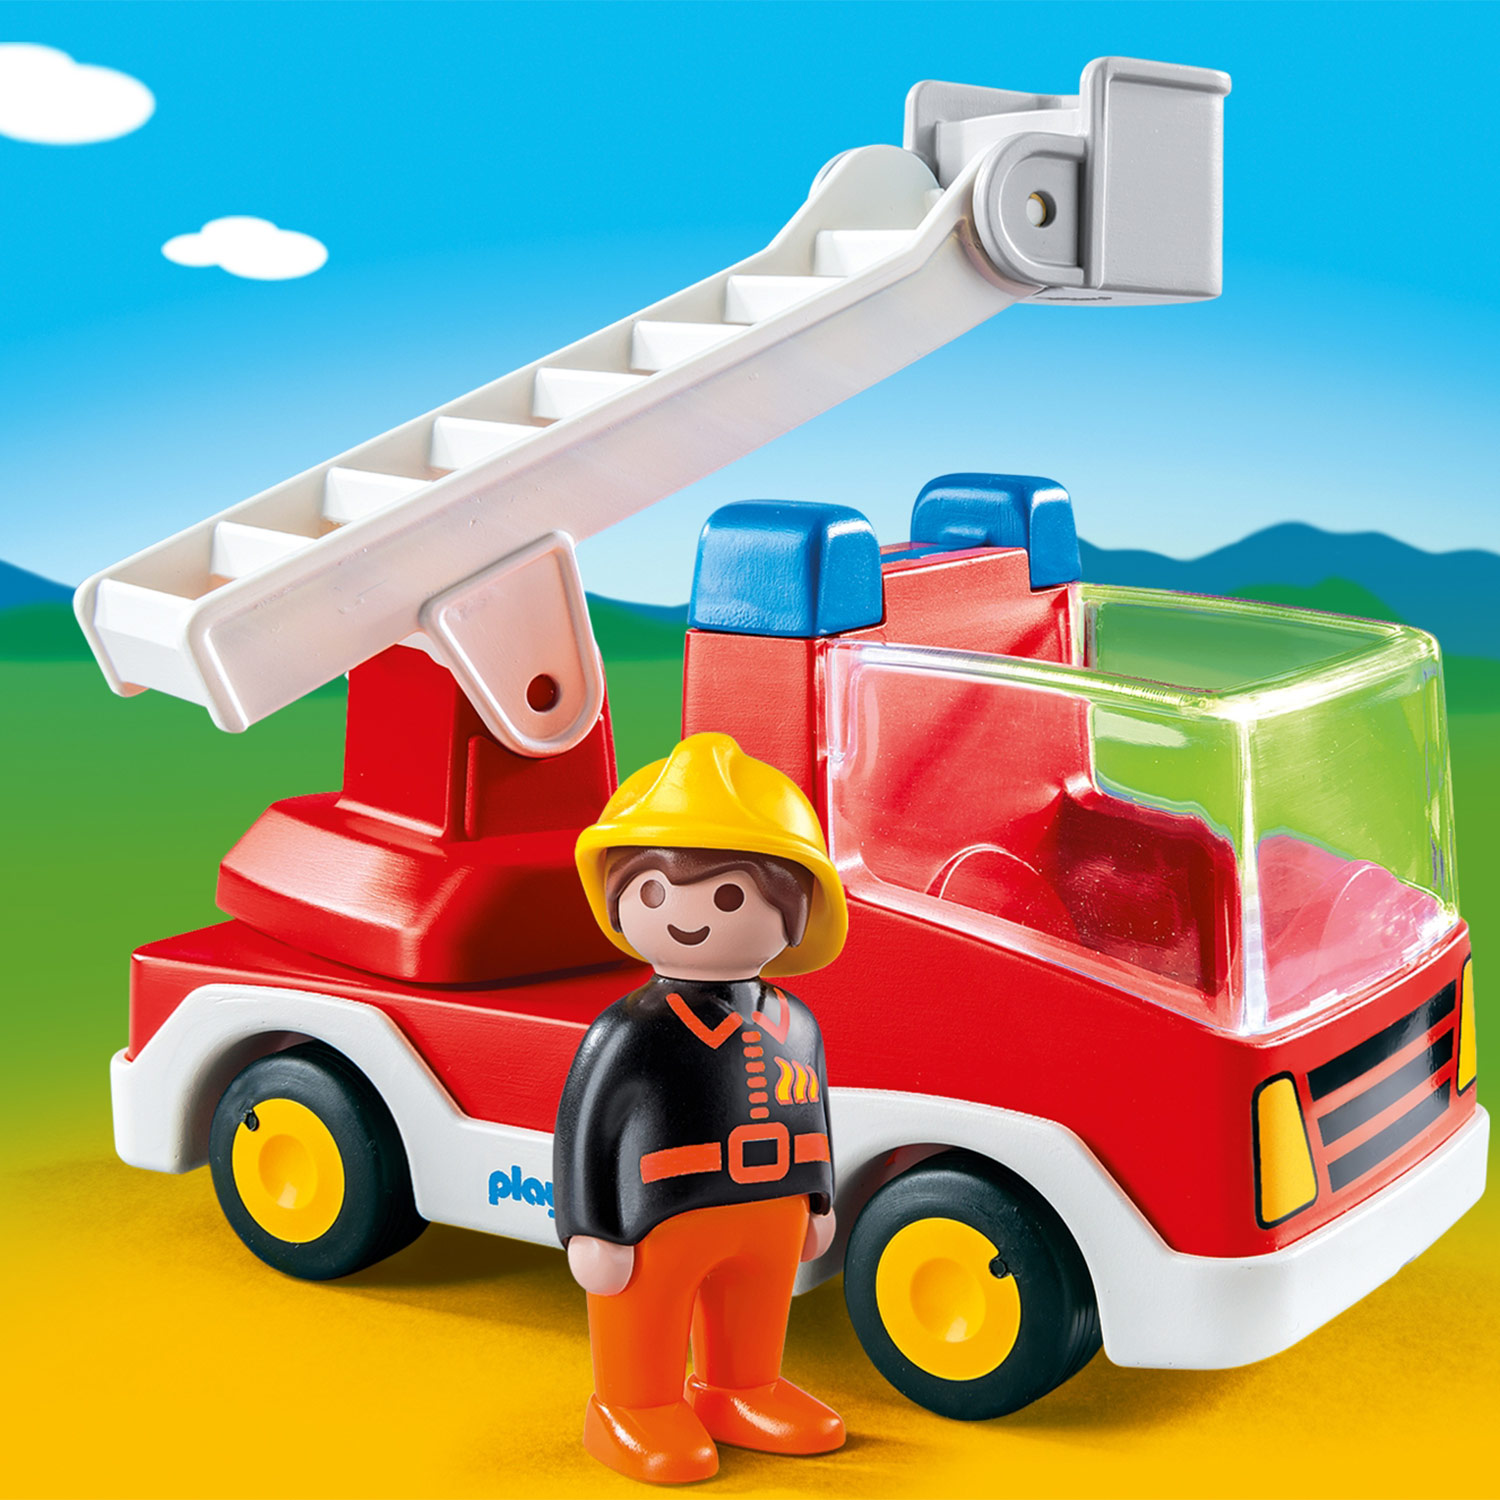 Playmobil 1.2.3. Feuerwehrauto mit Leiter - 6967